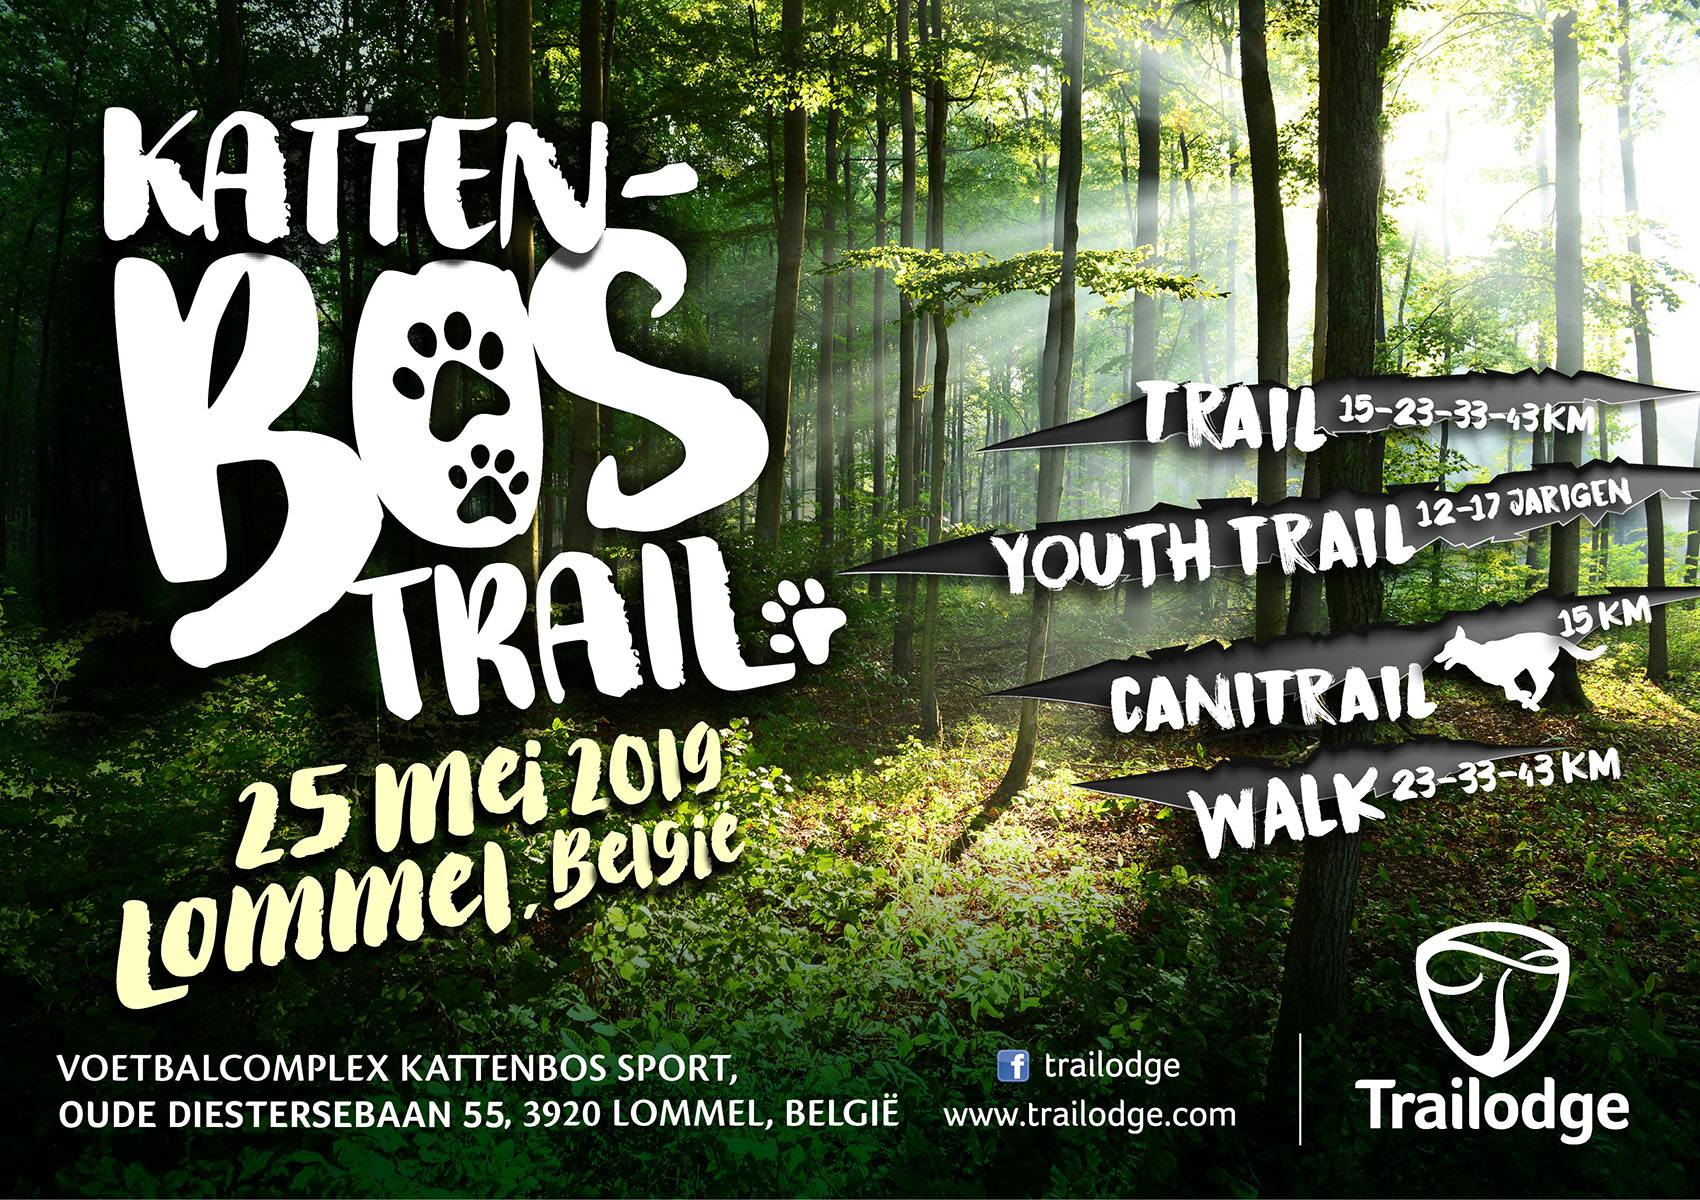 Kattenbos Trail 2019 Lommel